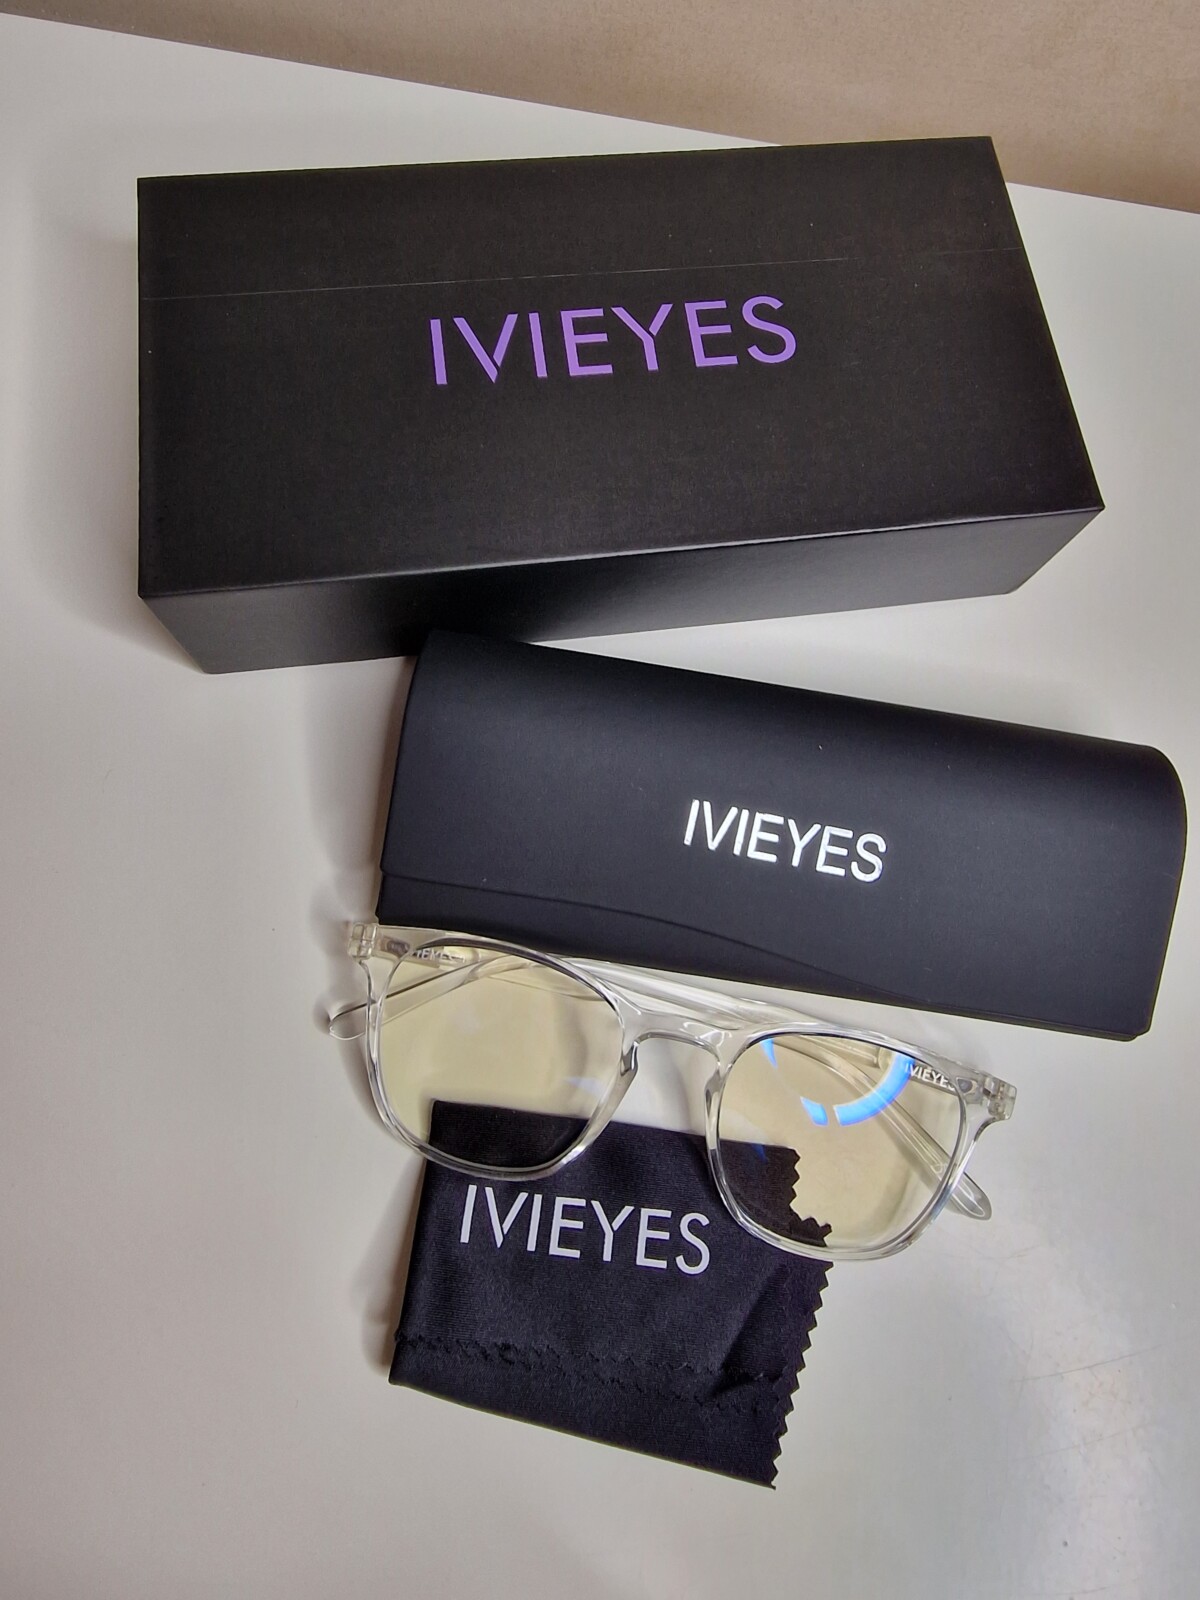 ivieyes-beste-blålysbriller-besteblålysbriller-mindremigrene-mindrehodepine-hodepine-migrene-bedresøvn-søvn-redusere-sovbedre-discountcode-isalicious-isalicious1-tips-anbefaler-IVIEYES-rabattkode